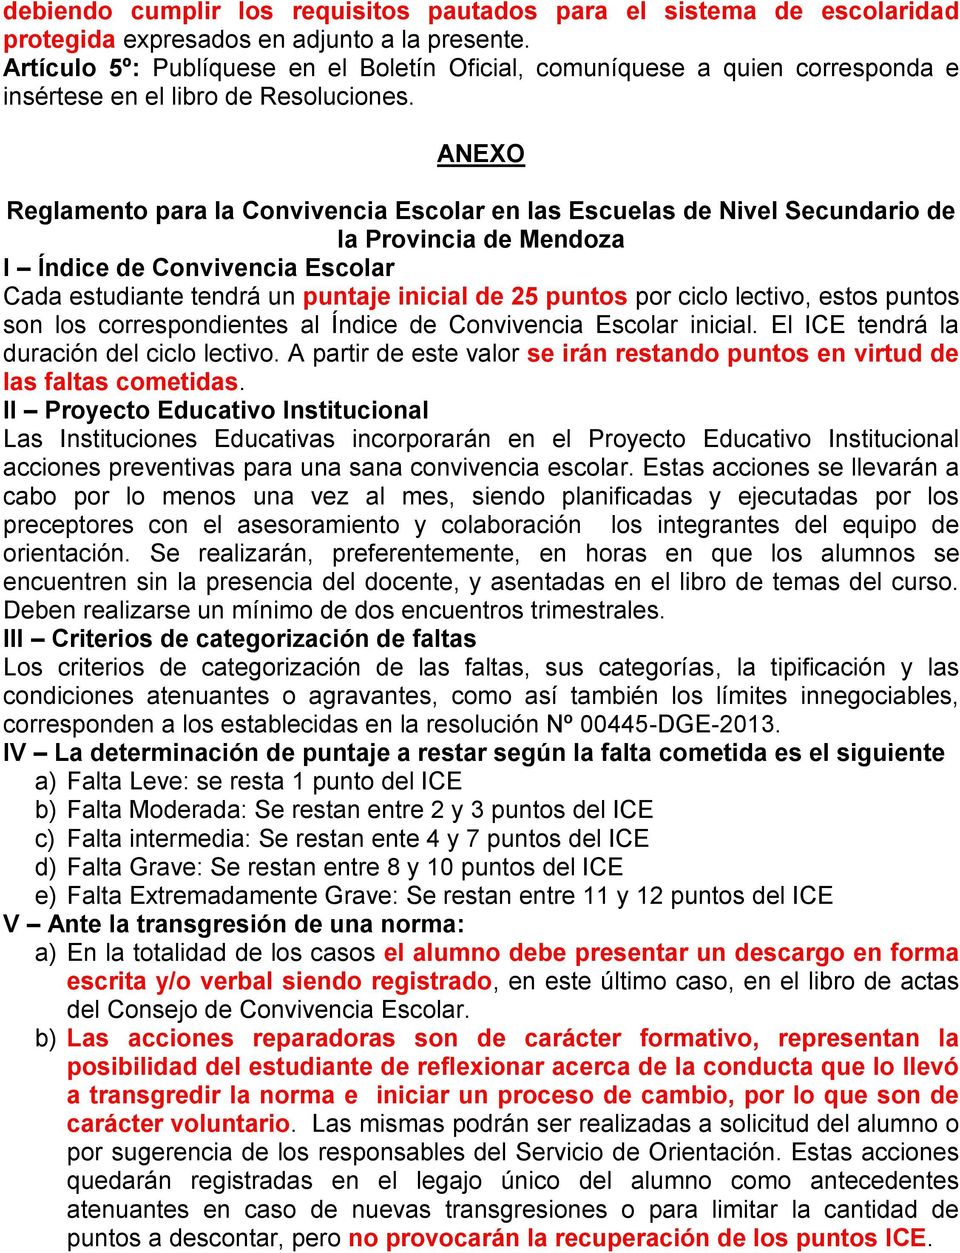 ANEXO Reglamento para la Convivencia Escolar en las Escuelas de Nivel Secundario de la Provincia de Mendoza I Índice de Convivencia Escolar Cada estudiante tendrá un puntaje inicial de 25 puntos por